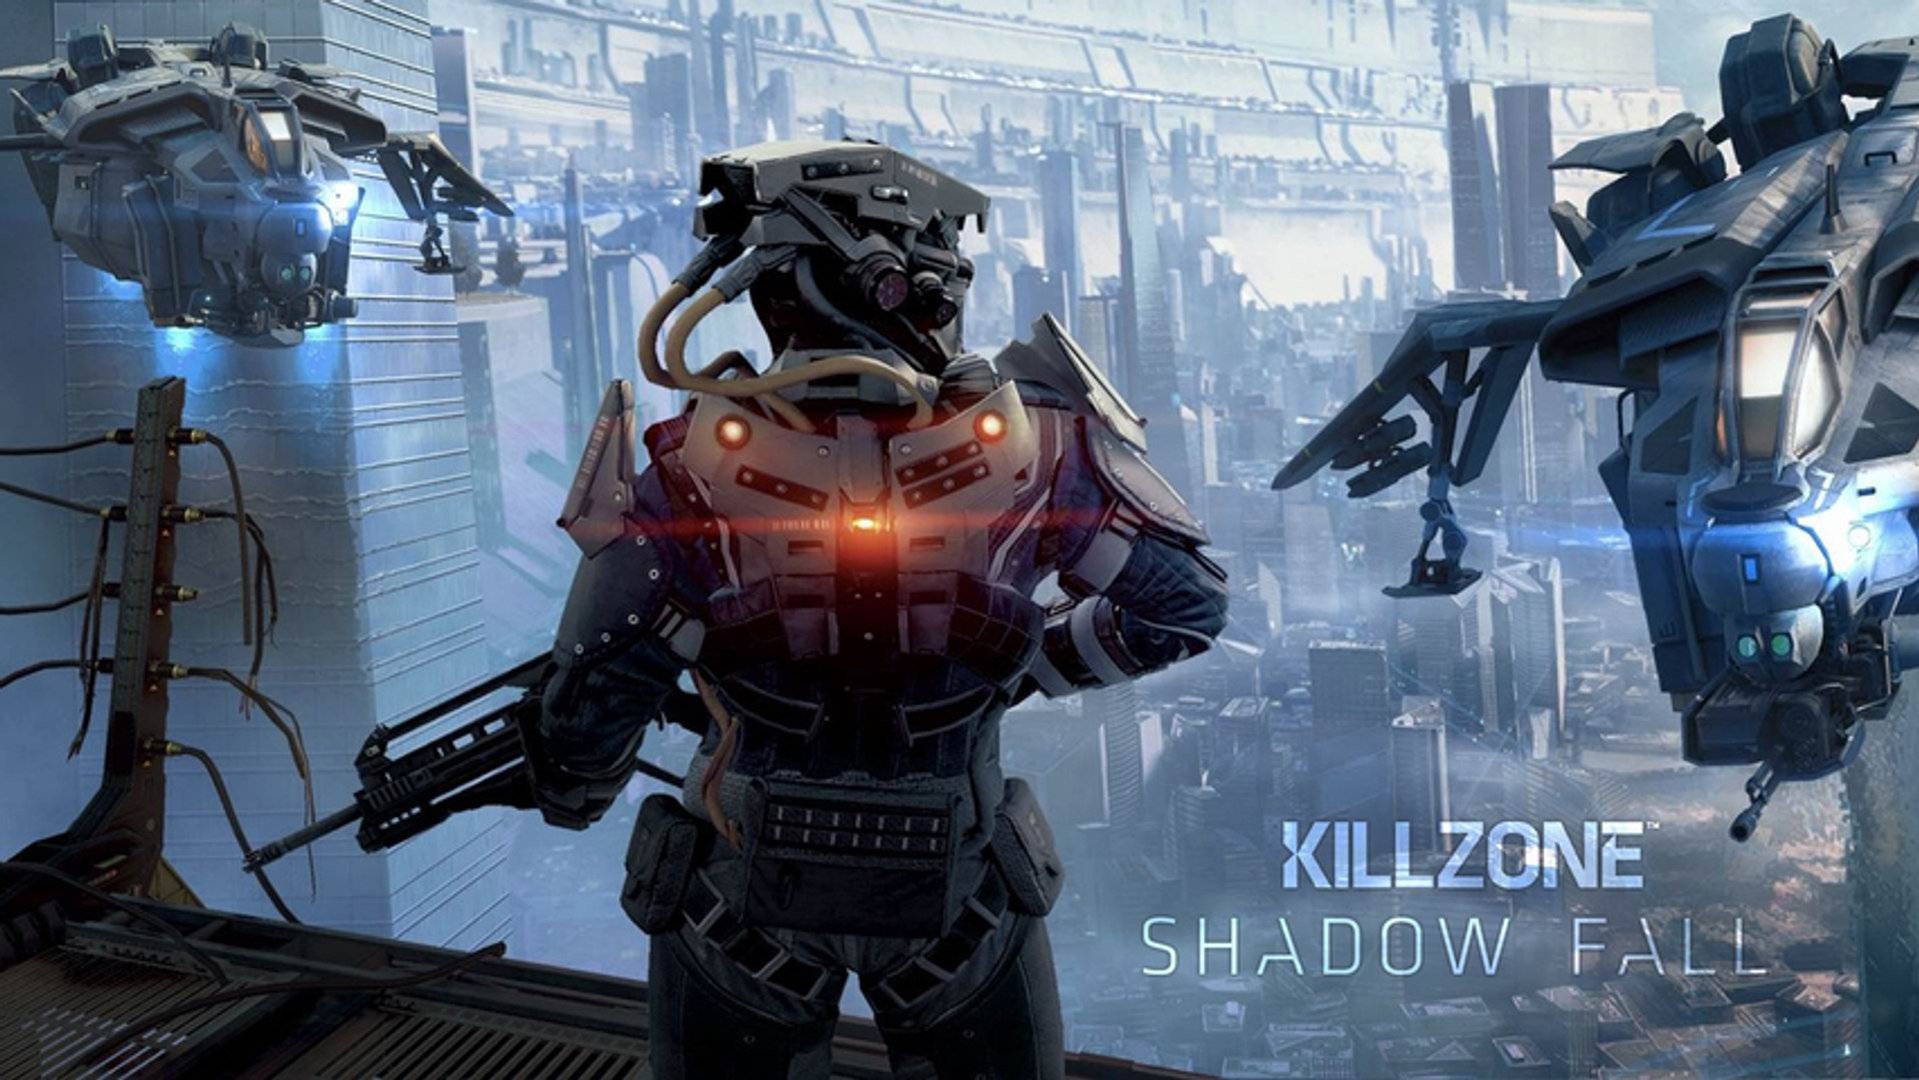 Killzone Shadow Fall - Story Trailer